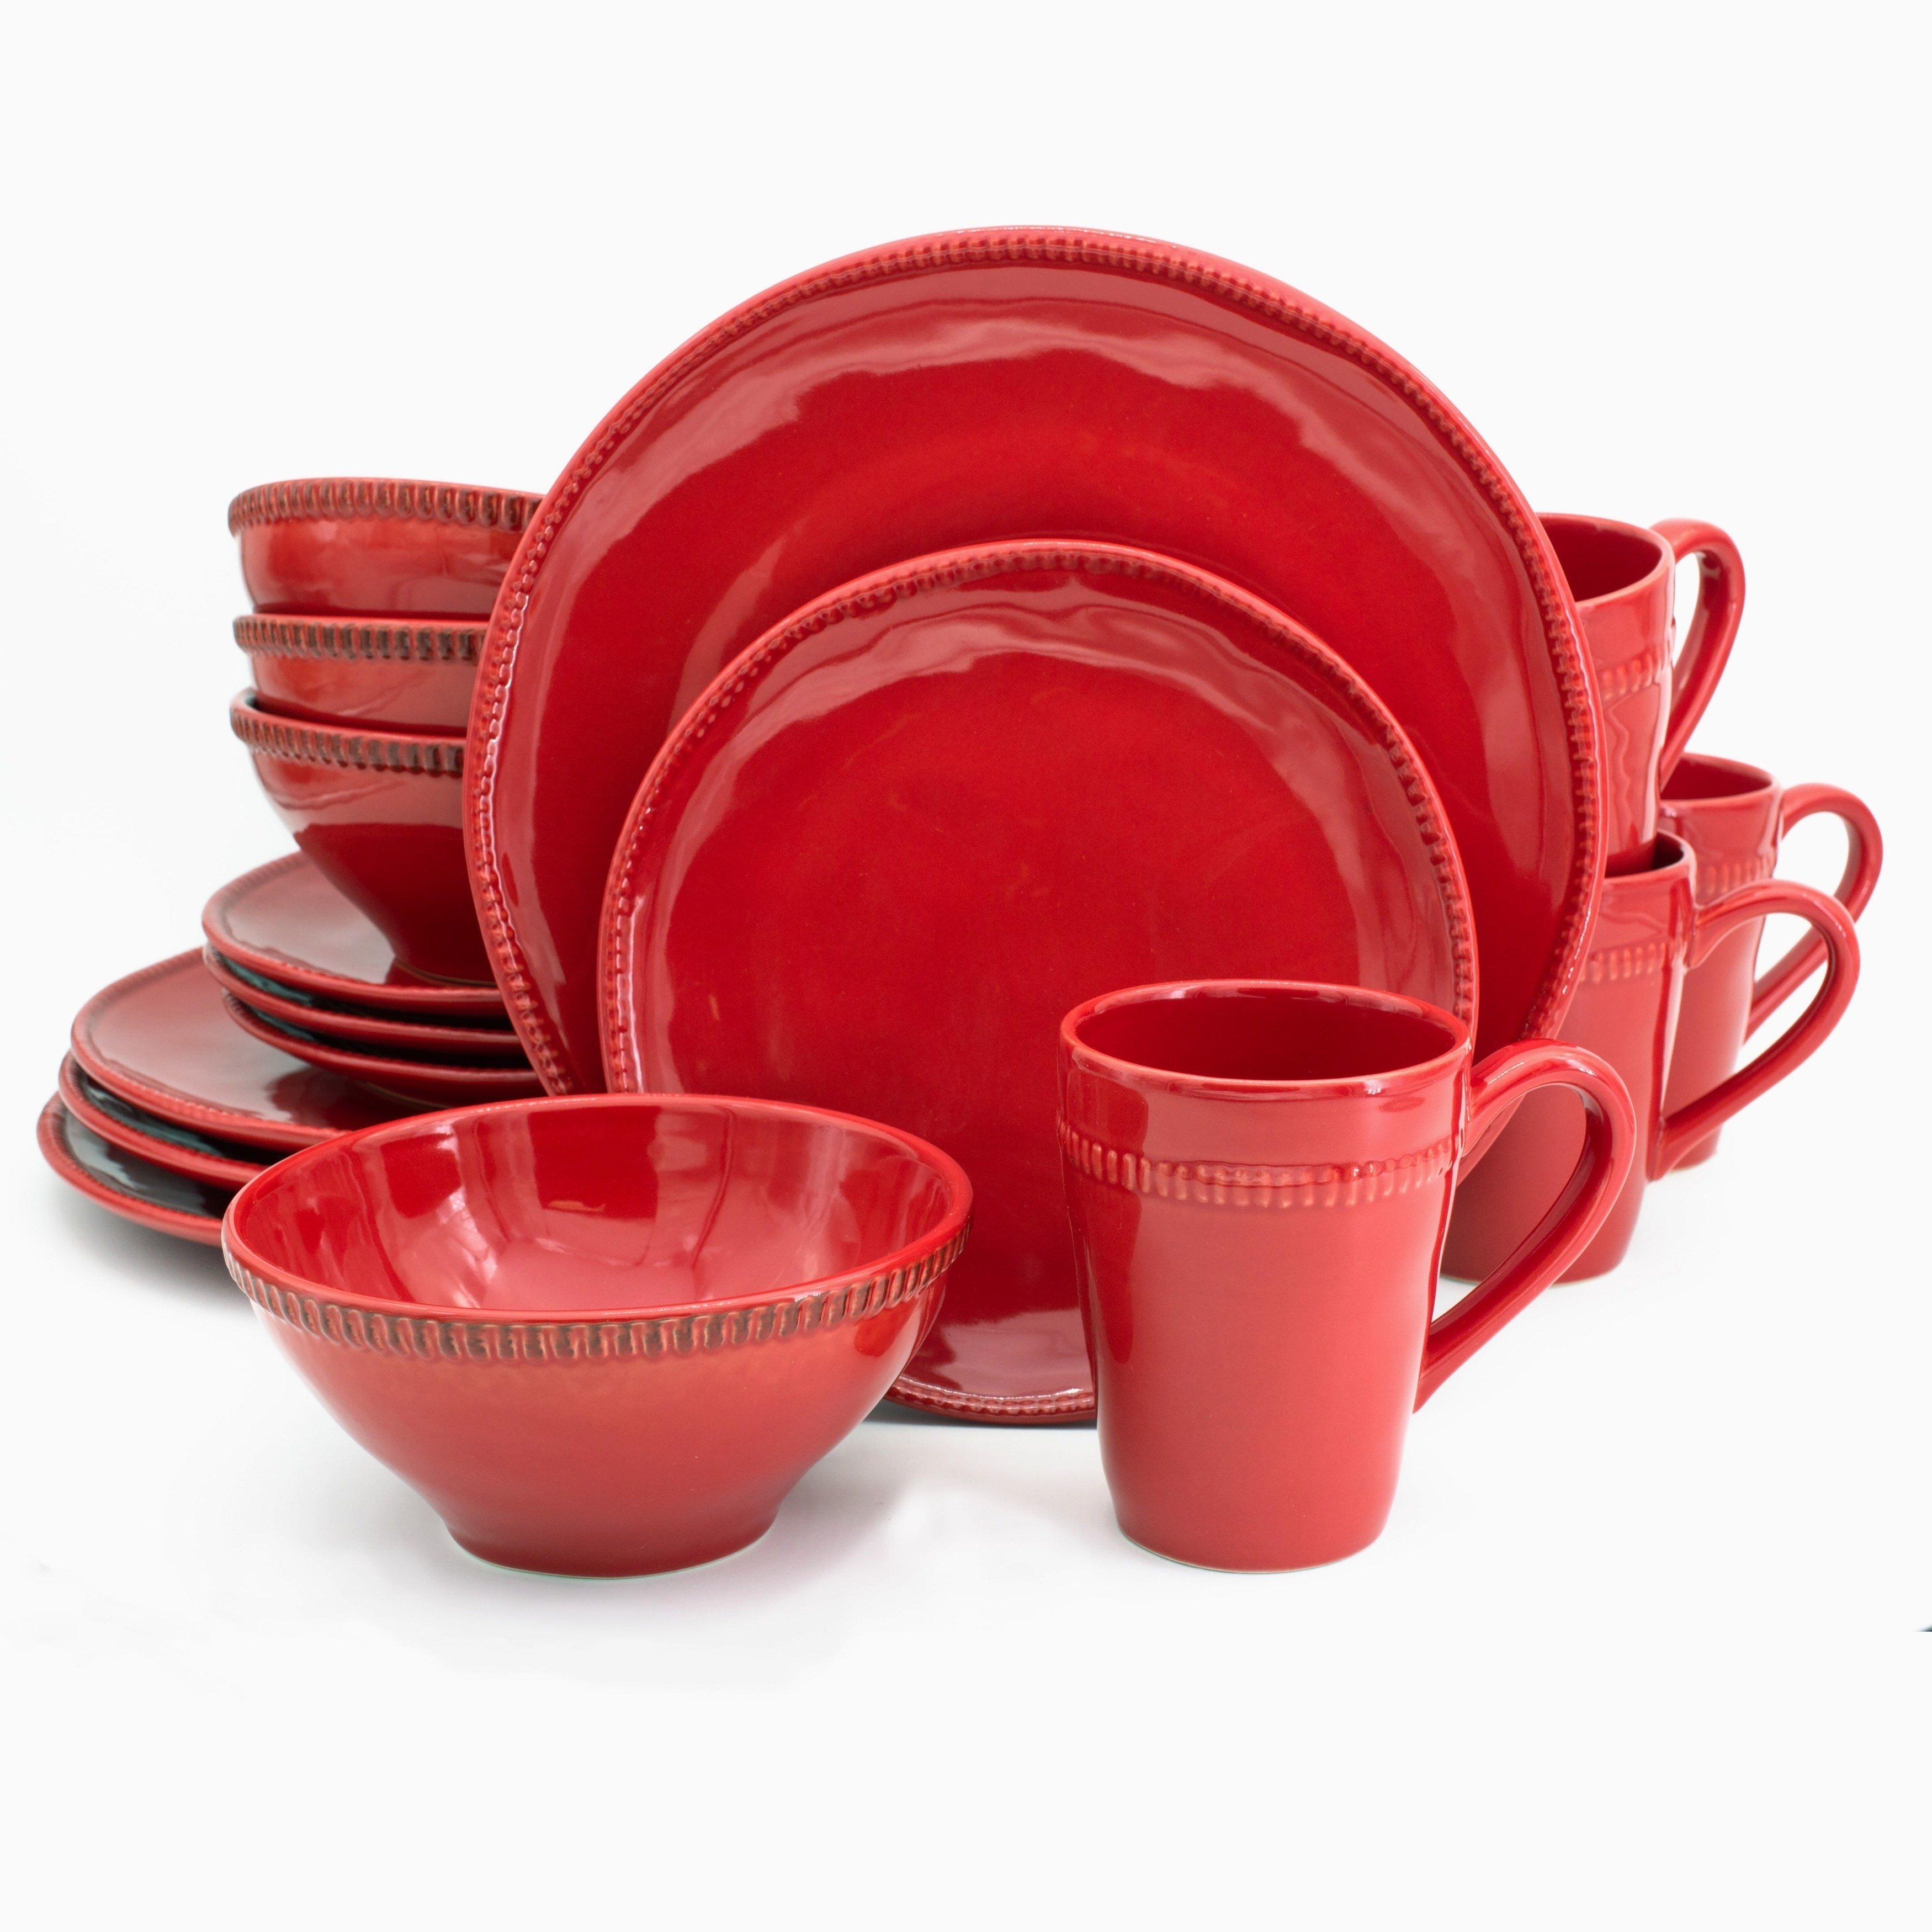 Купить красную посуду. Красная посуда для кухни. Посуда красного цвета. Красная керамика посуда. Набор посуды красный.